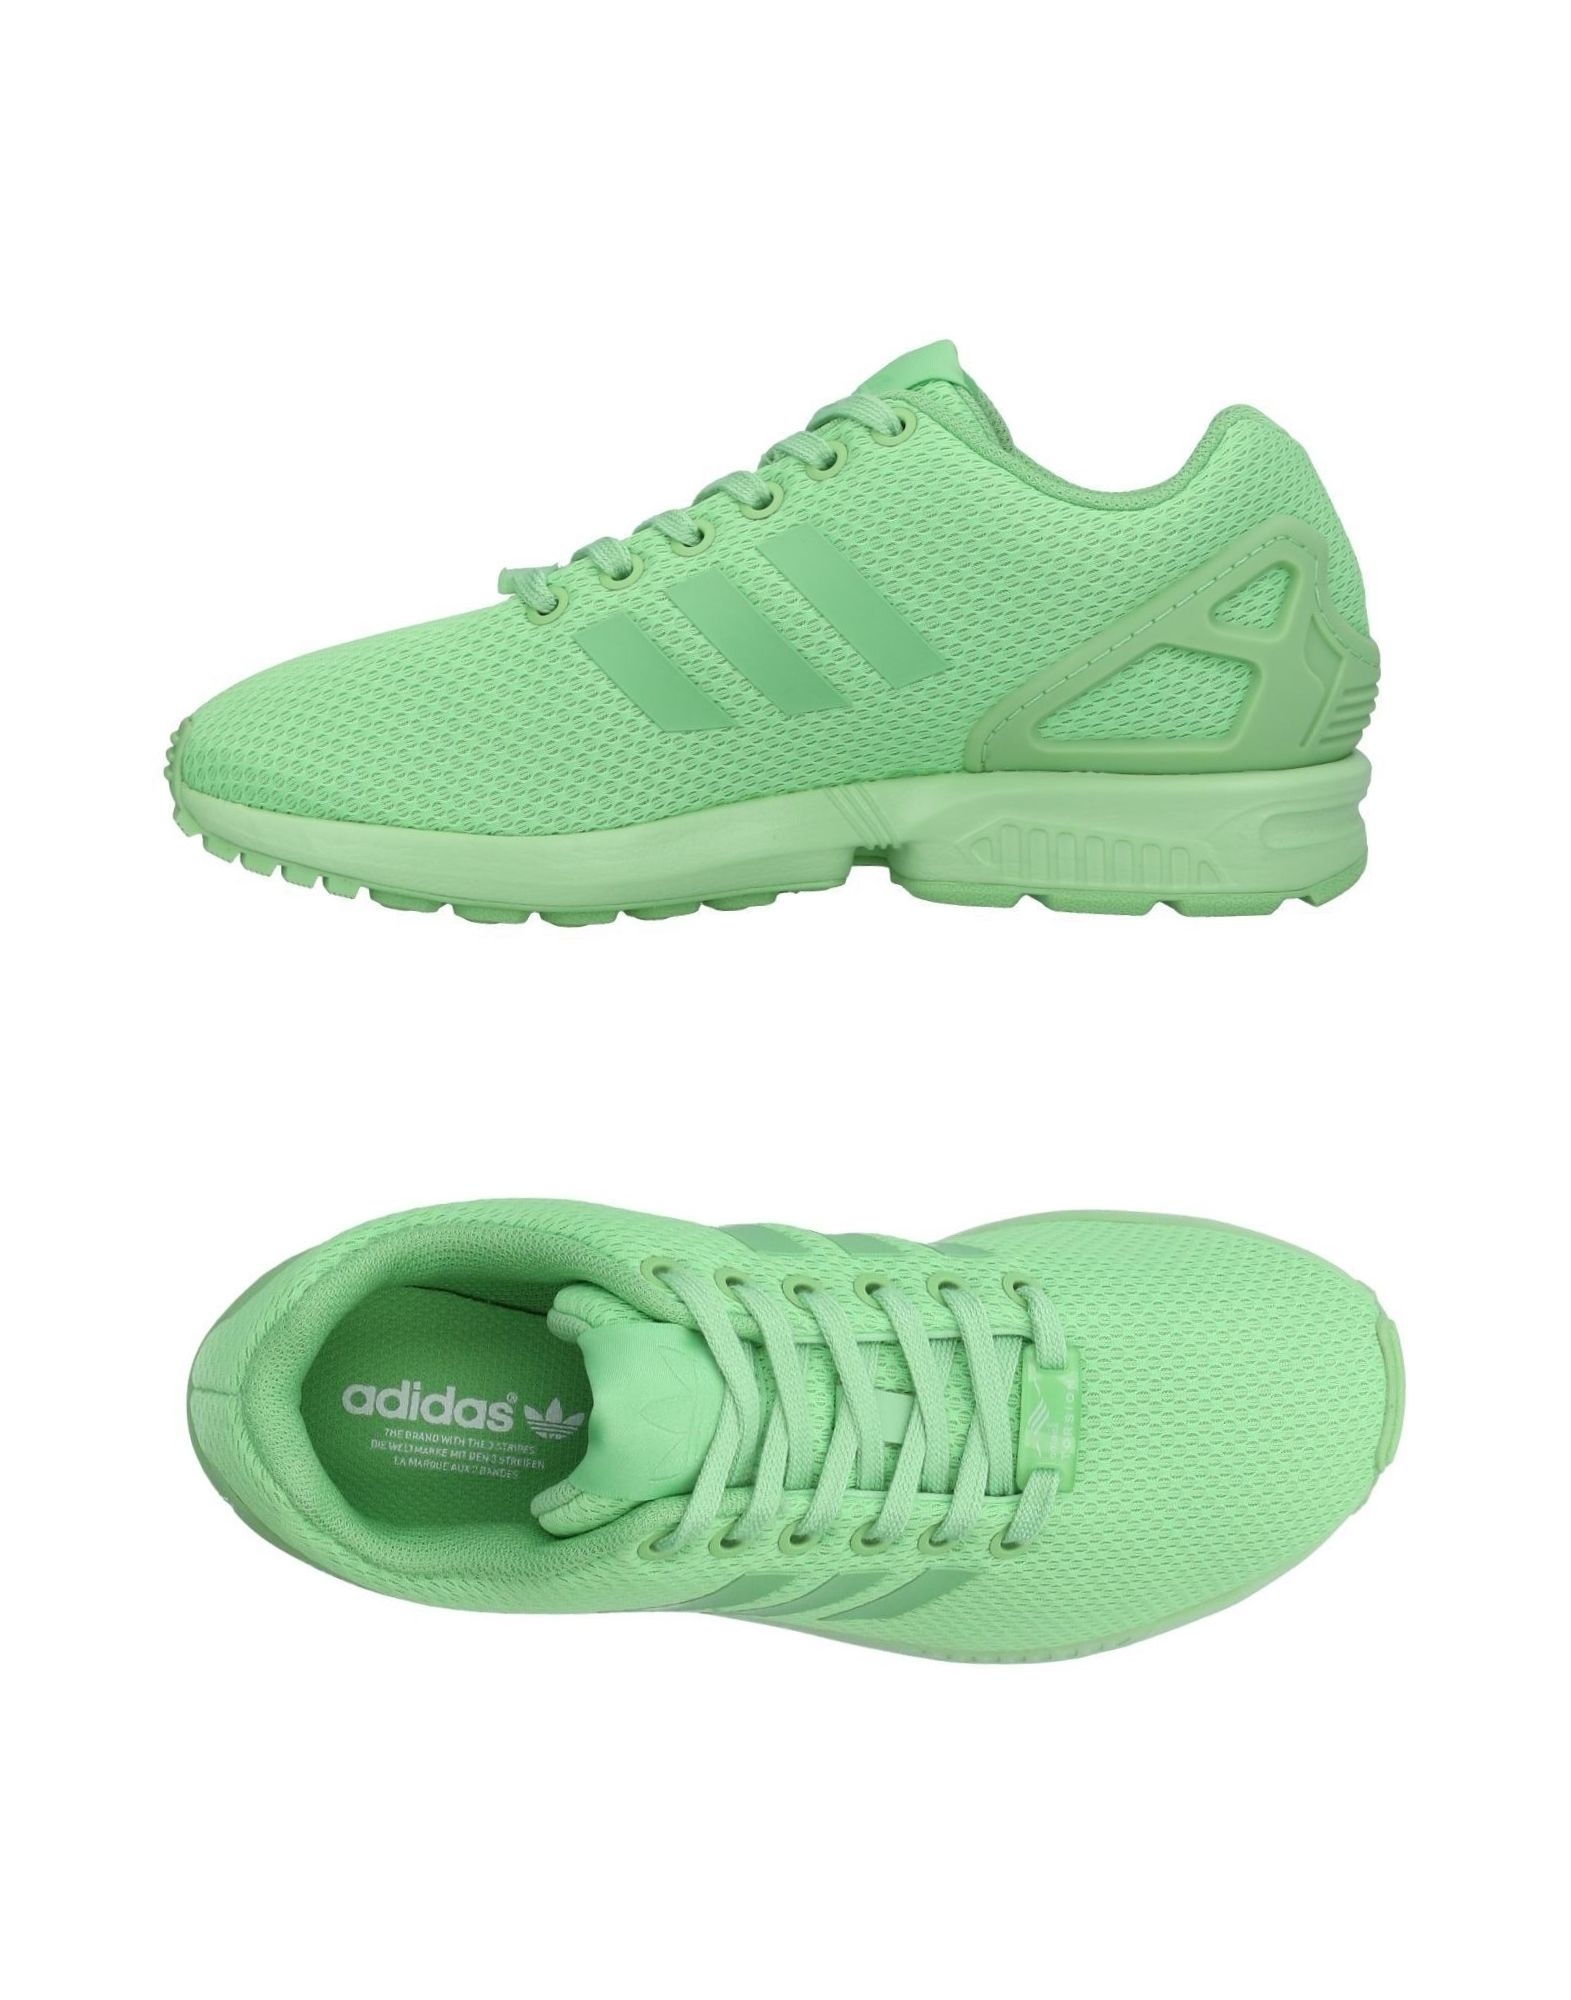 Зеленые кроссовки адидас response St женские зеленые. Кеды адидас зеленые женские. Зеленые кроссовки adidas 2017. Адидас кеды бледно зеленые. Кеды адидас зеленые